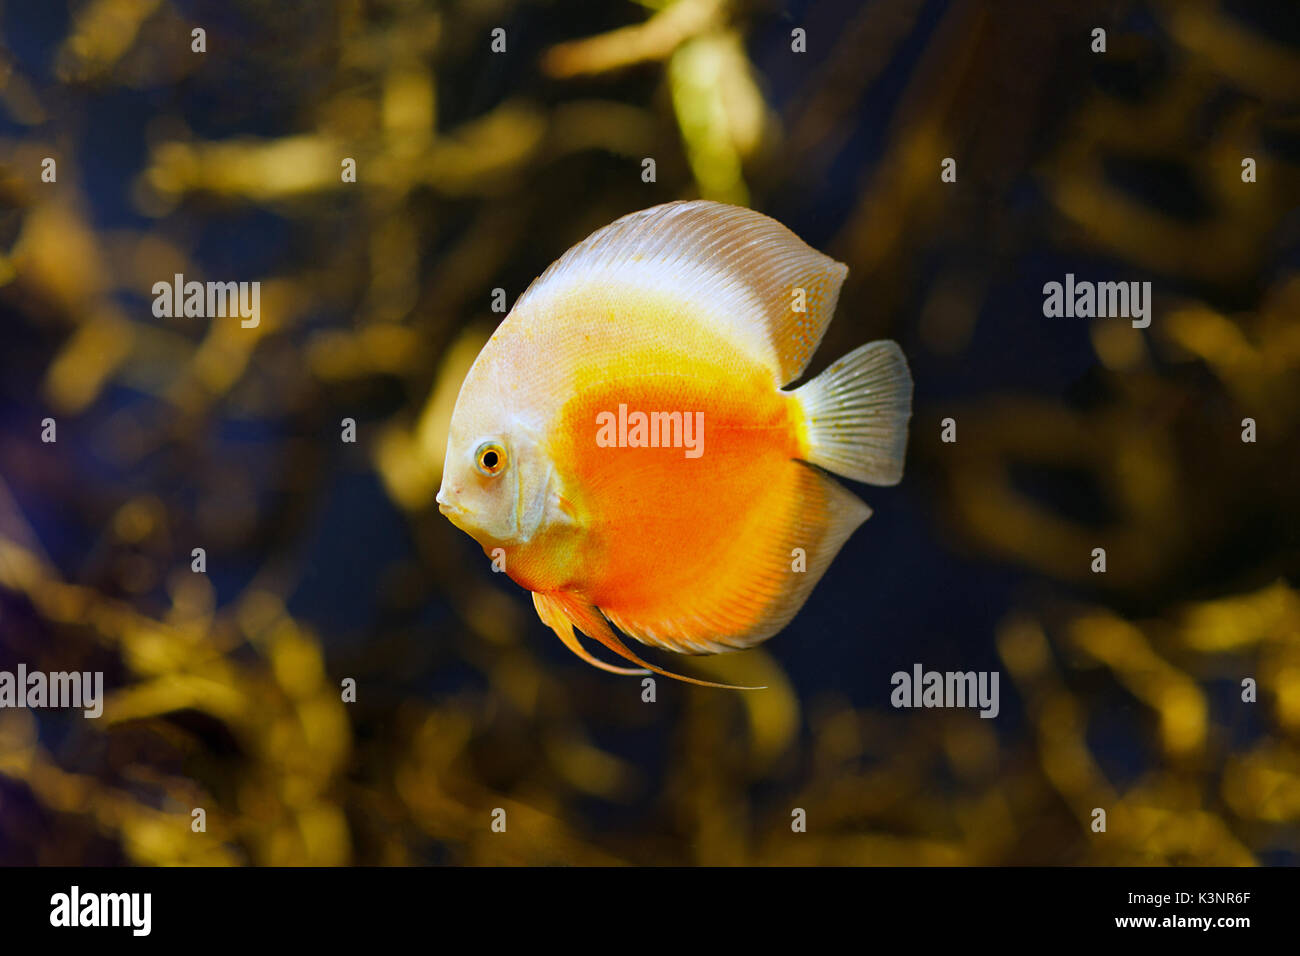 Checkerboard discus fish in amazon river Stock Photo